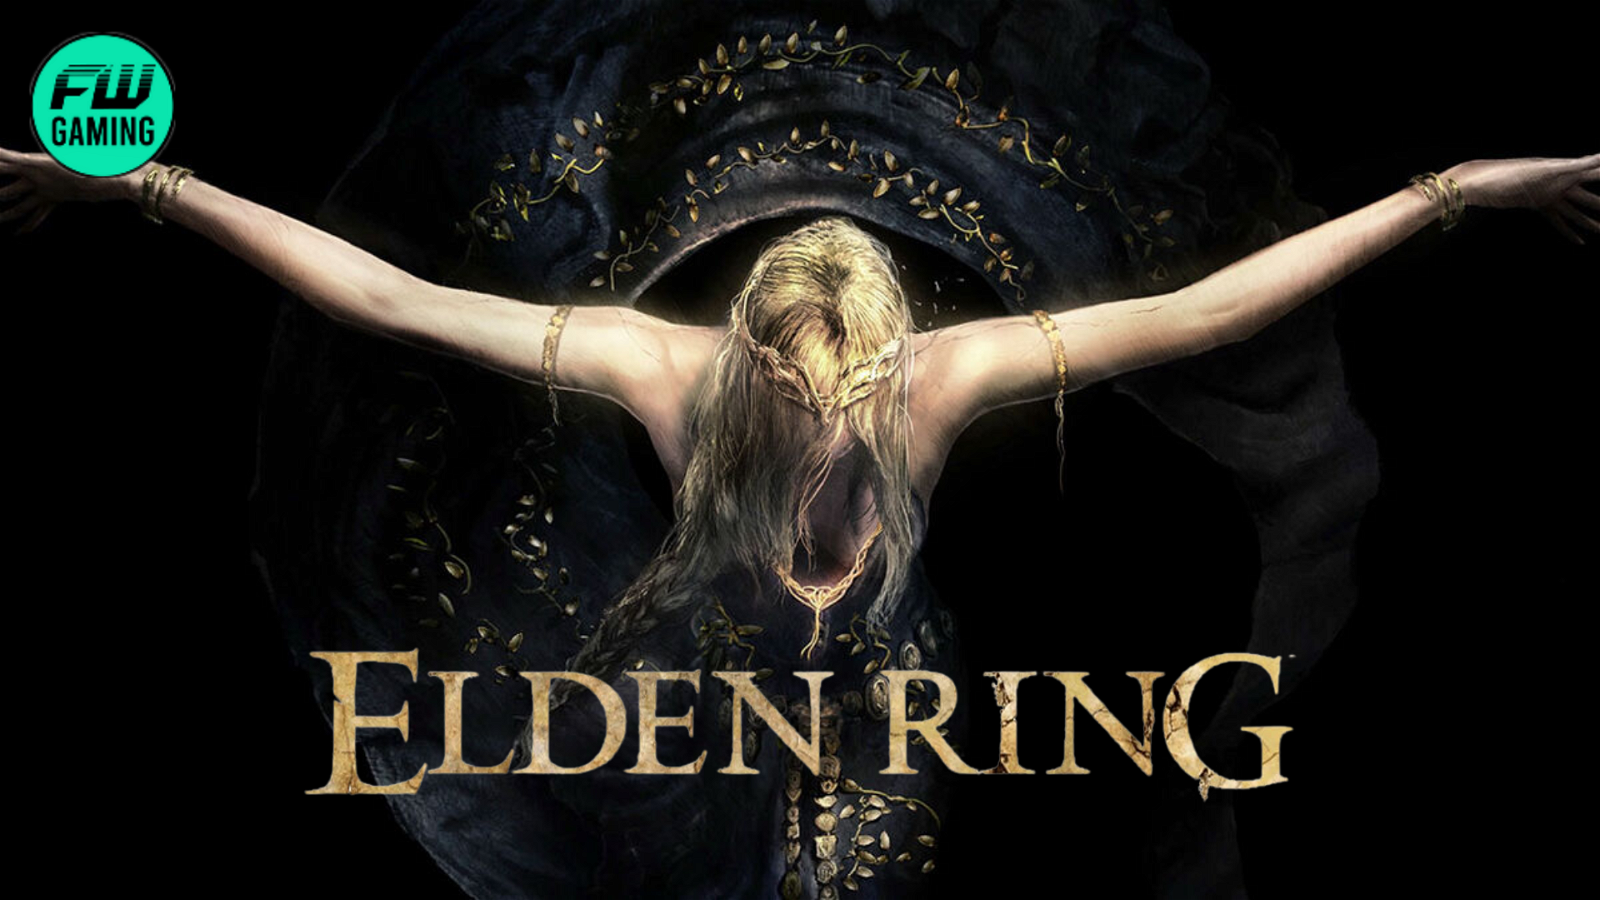 Вступительное слово Elden Ring было вдохновлено знаменитым произведением искусства, которое заставит вас взглянуть на него в совершенно новом свете